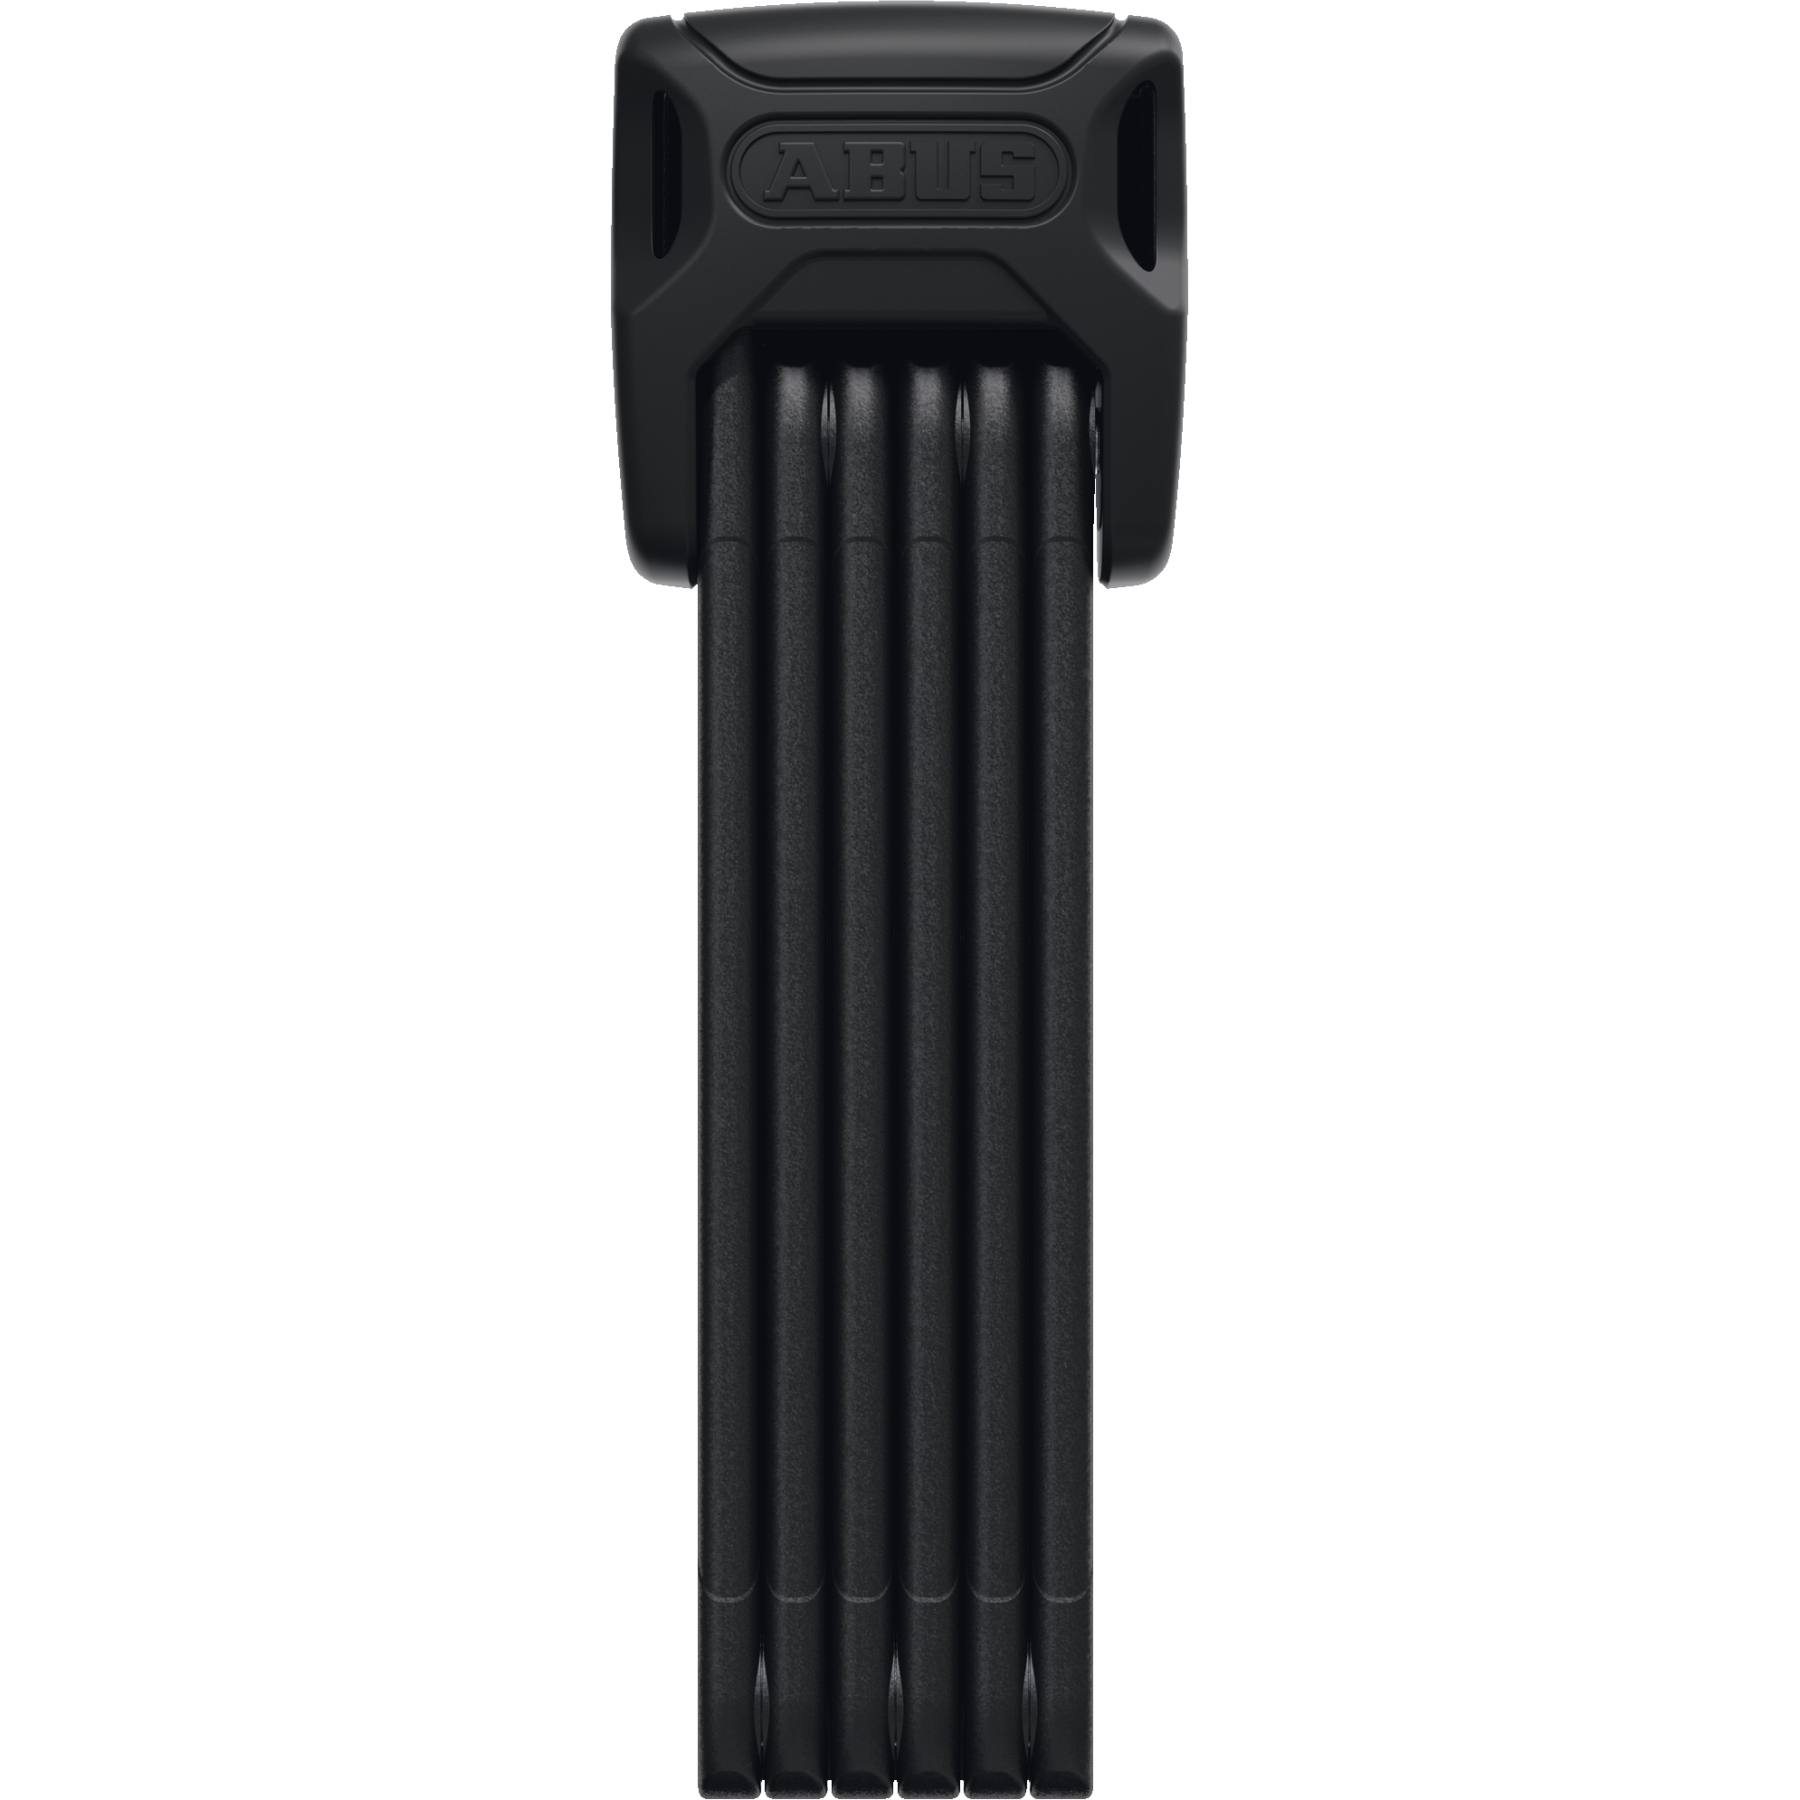 Productfoto van ABUS Bordo XPlus™ 6000K/90 Folding Lock incl. Bracket SH - black